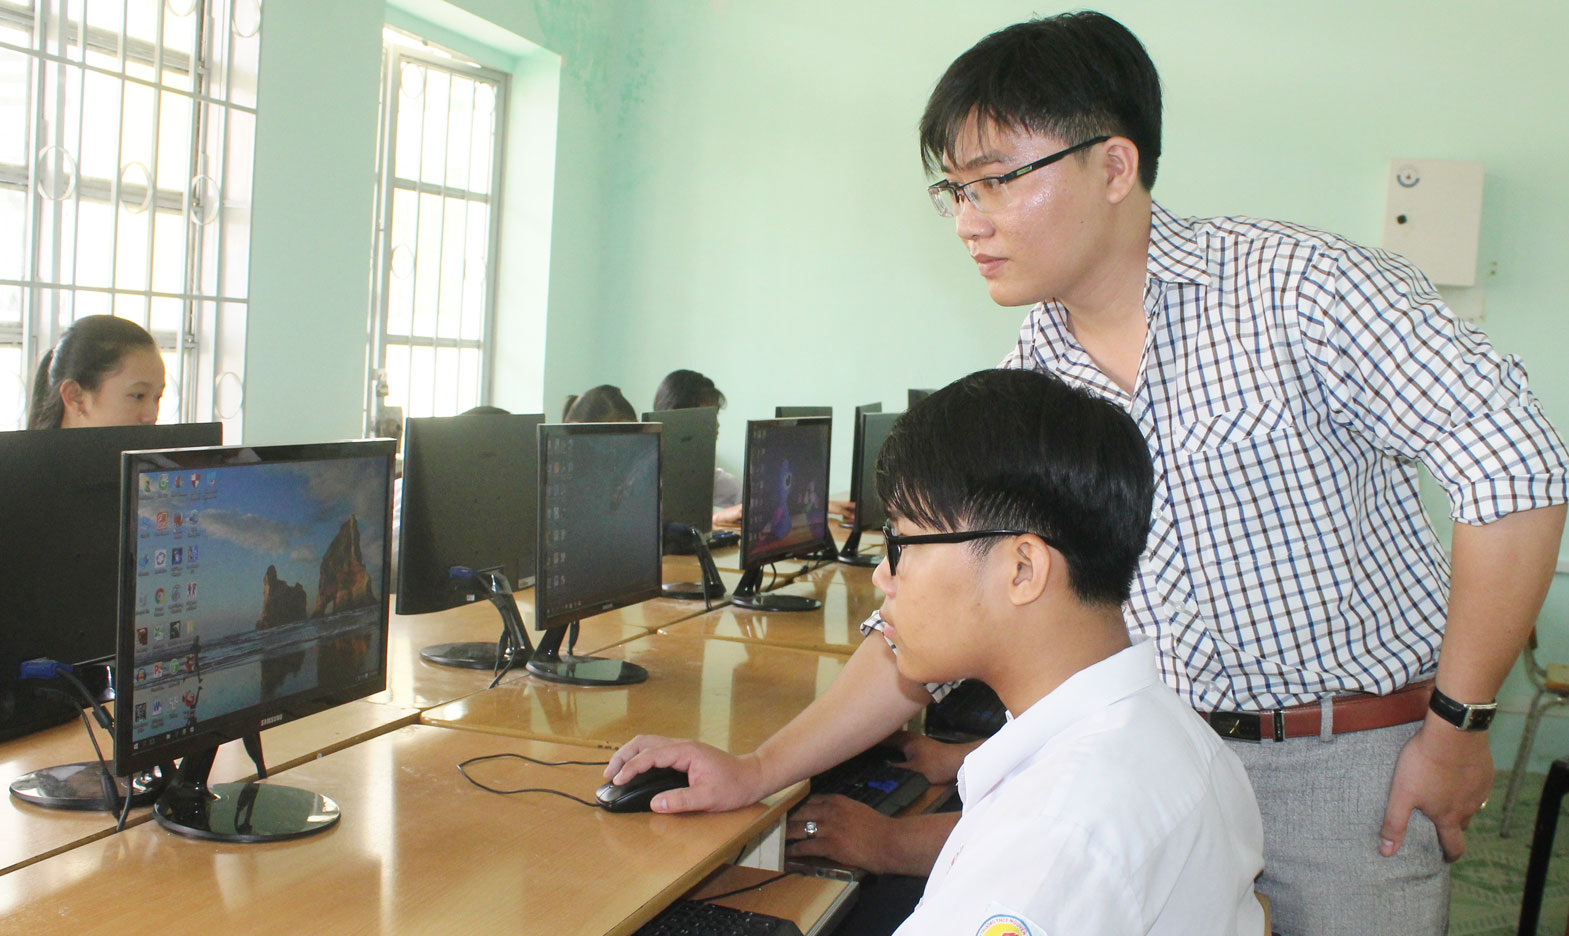 Năm 2017, Trường THCS Nguyễn Văn Chính vận động mạnh thường quân, nhà hảo tâm 10 bộ máy vi tính, trị giá 100 triệu đồng góp phần cải thiện trang thiết bị dạy học của nhà trường